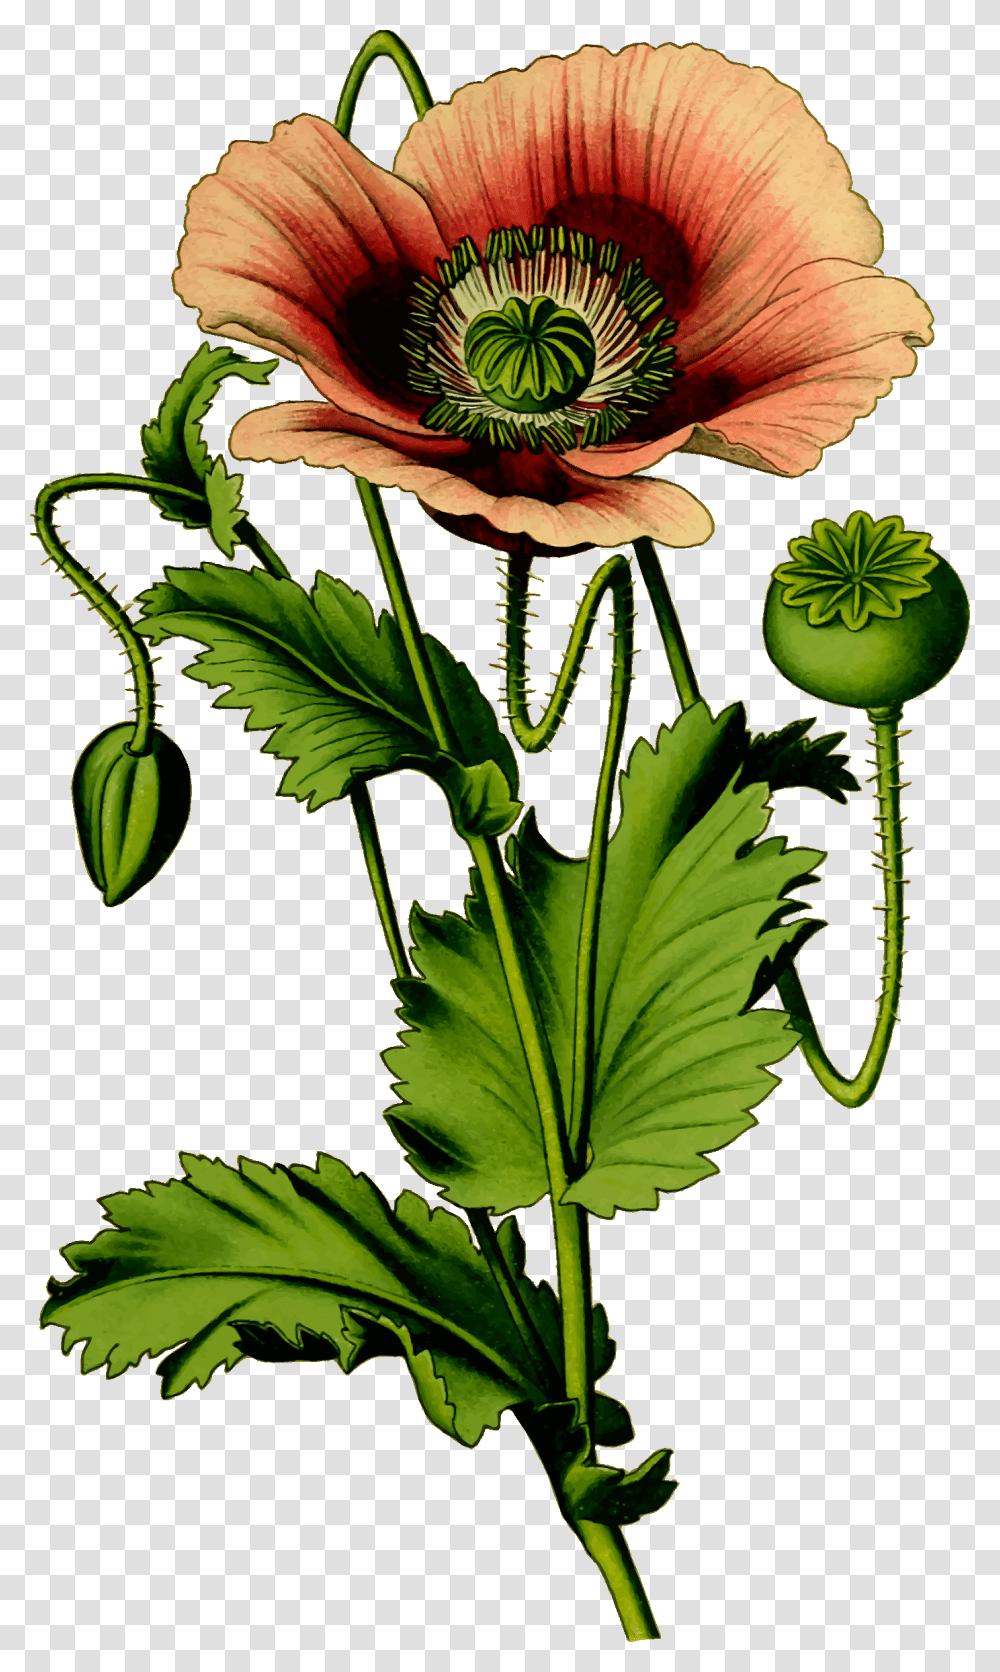 Opium Poppy Plant Vector, Vase, Jar, Pottery, Leaf Transparent Png